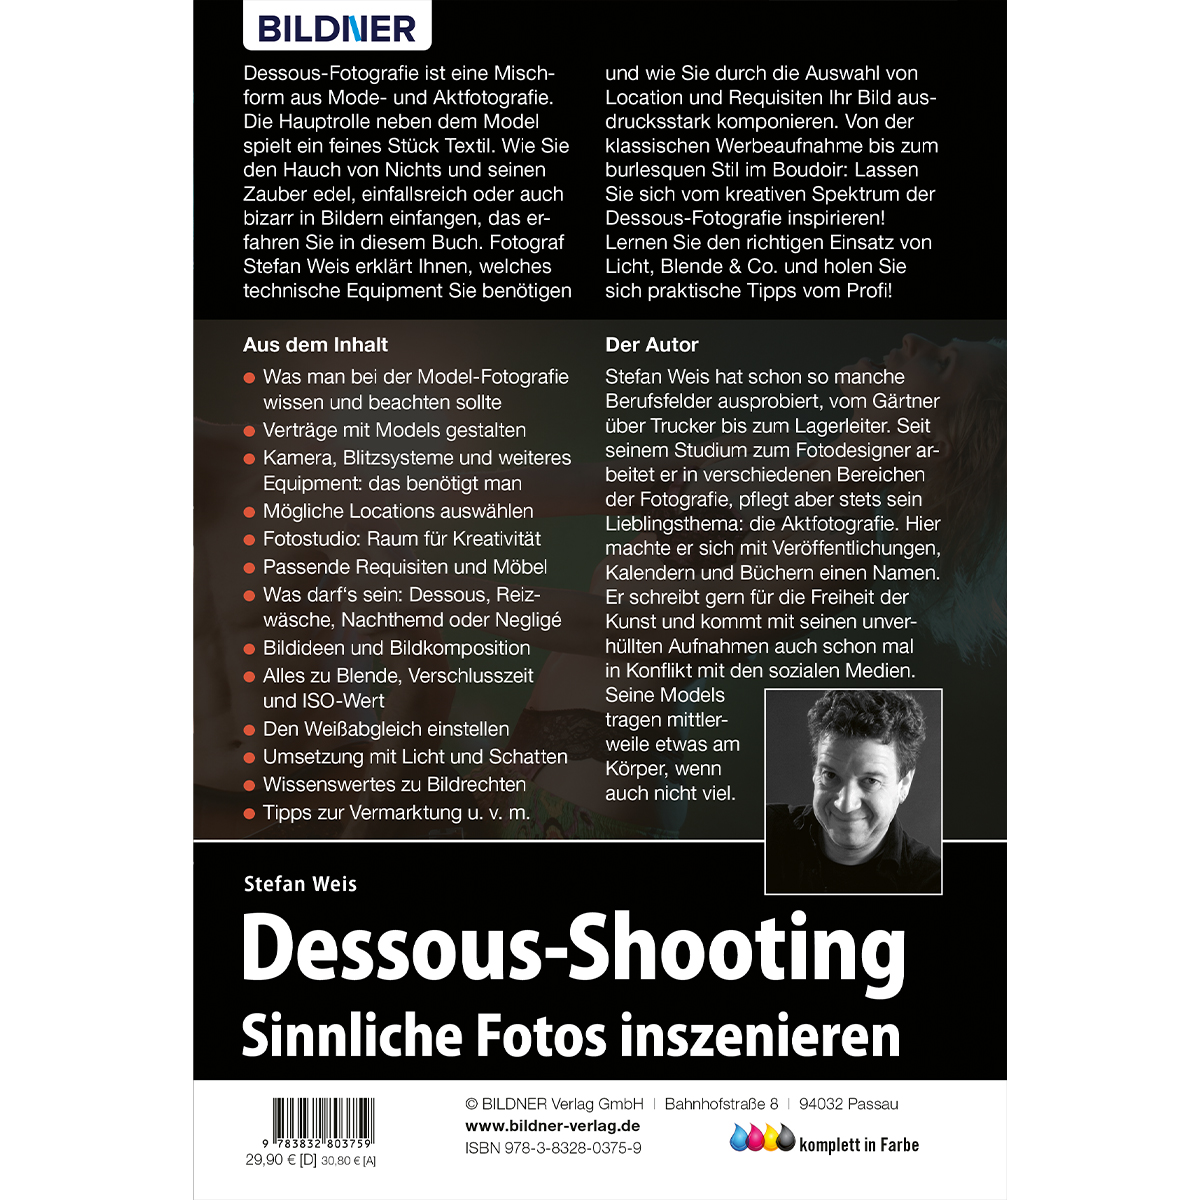 Dessous-Shooting - Sinnliche inszenieren Fotos